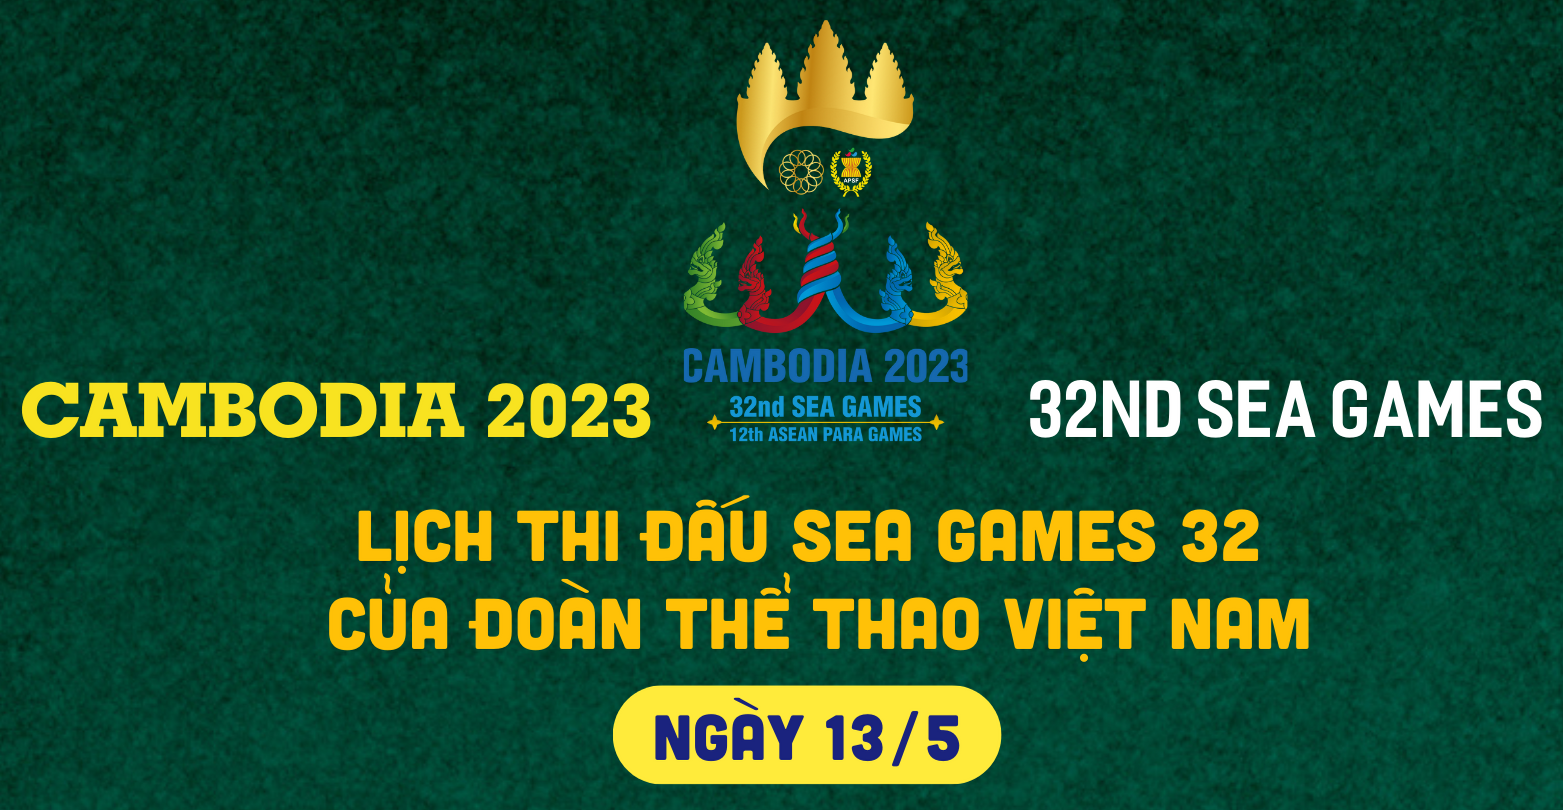 Lịch thi đấu của đoàn thể thao Việt Nam tại SEA Games 32 ngày 13/5